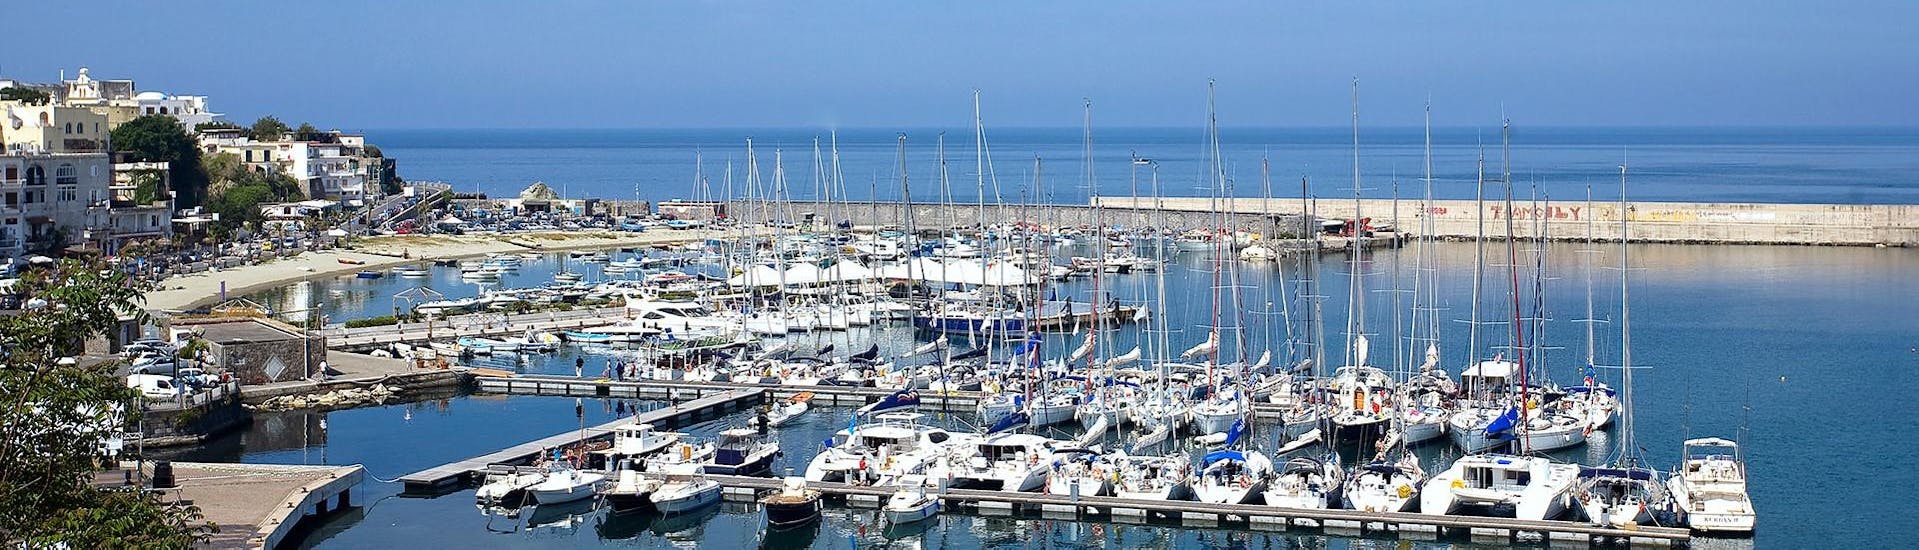 Il porto di Forio, punto di partenza delle escursioni in barca intorno a Ischia e Procida con Alcione Boat Ischia.